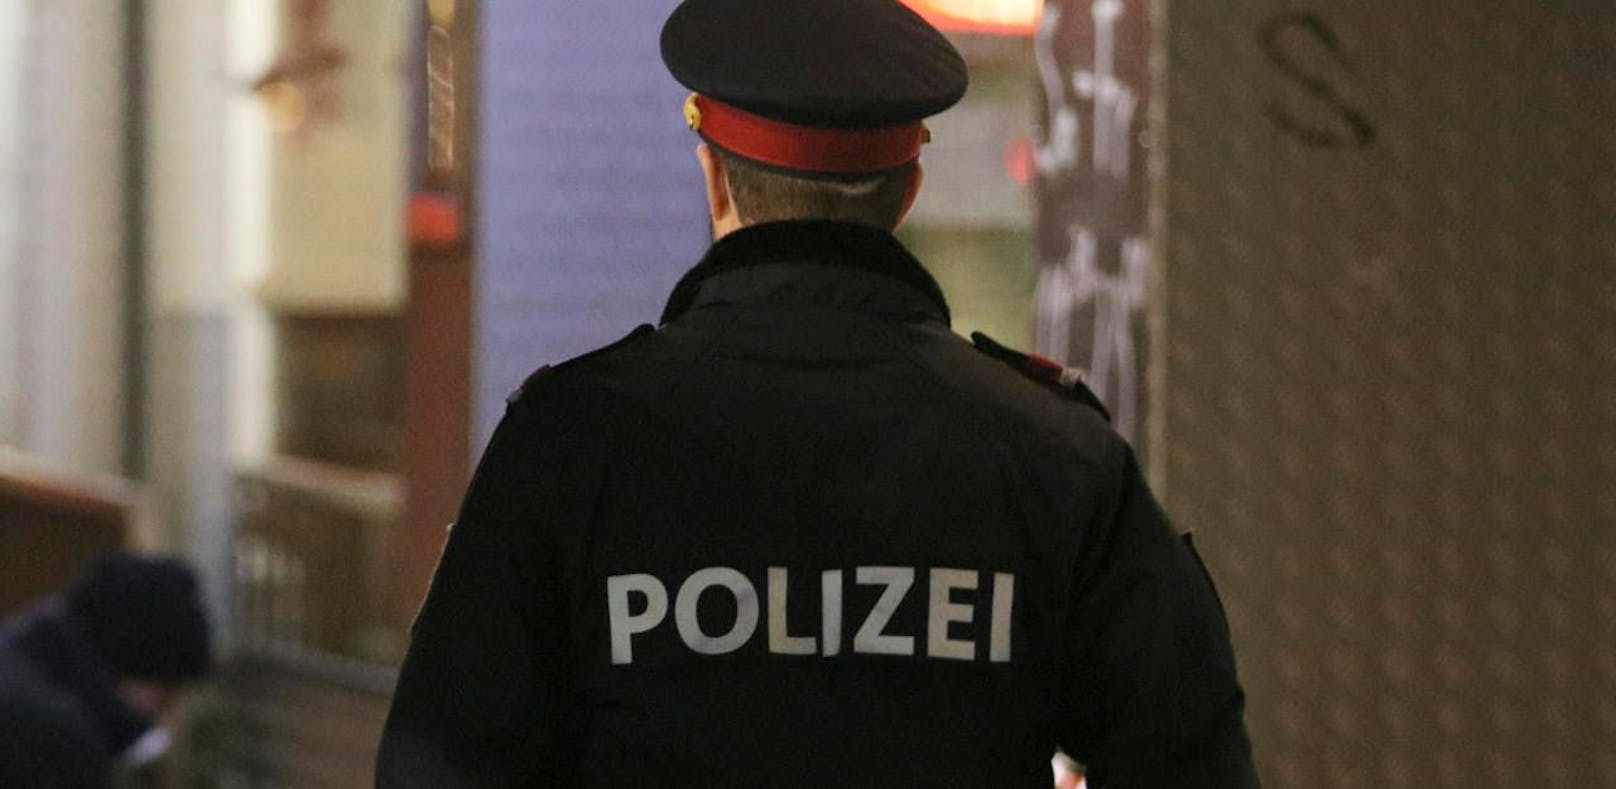 Die Polizei musste in eine Schule in Linz kommen, weil es dort eine wilde Prügelei gegeben hatte. (Symbolfoto)